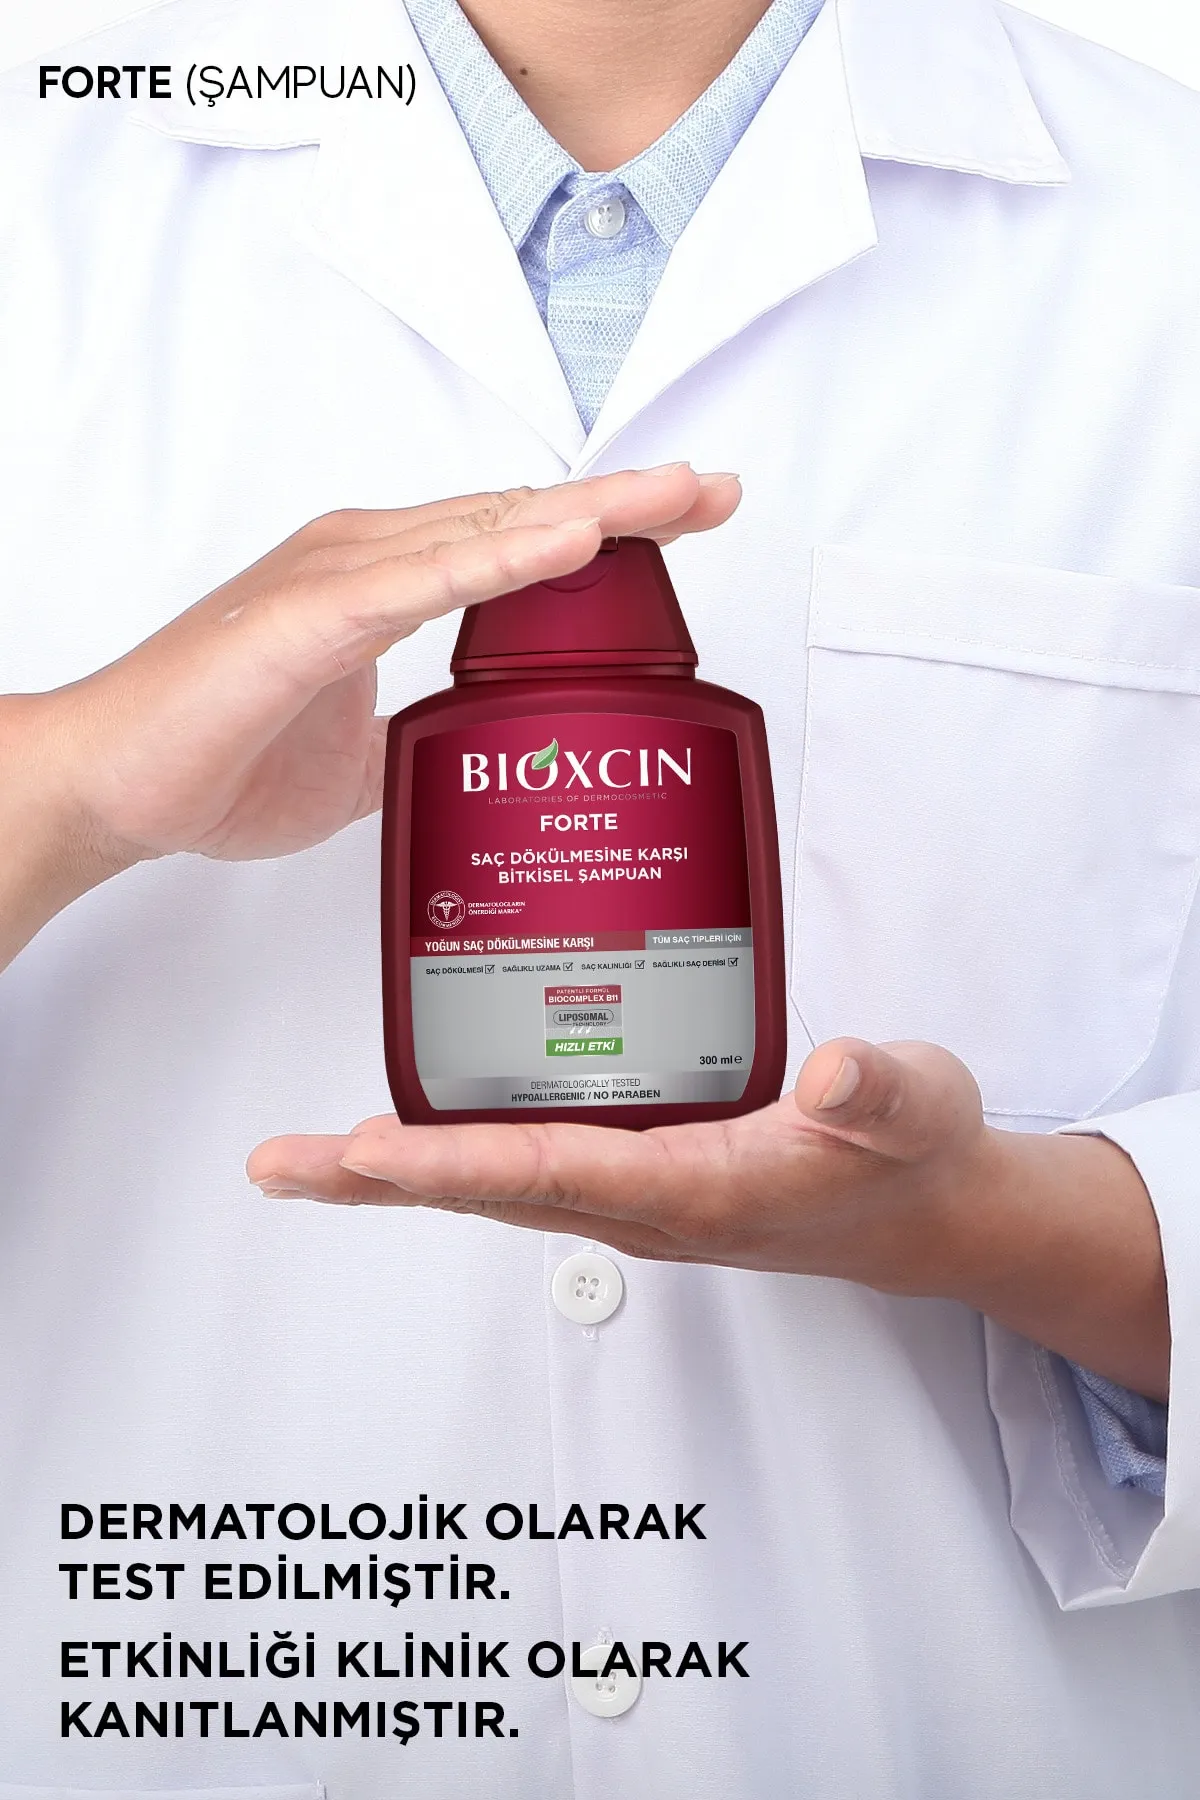 Bioxcin Forte Saç Dökülmesine Karşı Bakım Şampuanı 300 ml - 3 AL 2 ÖDE - 8